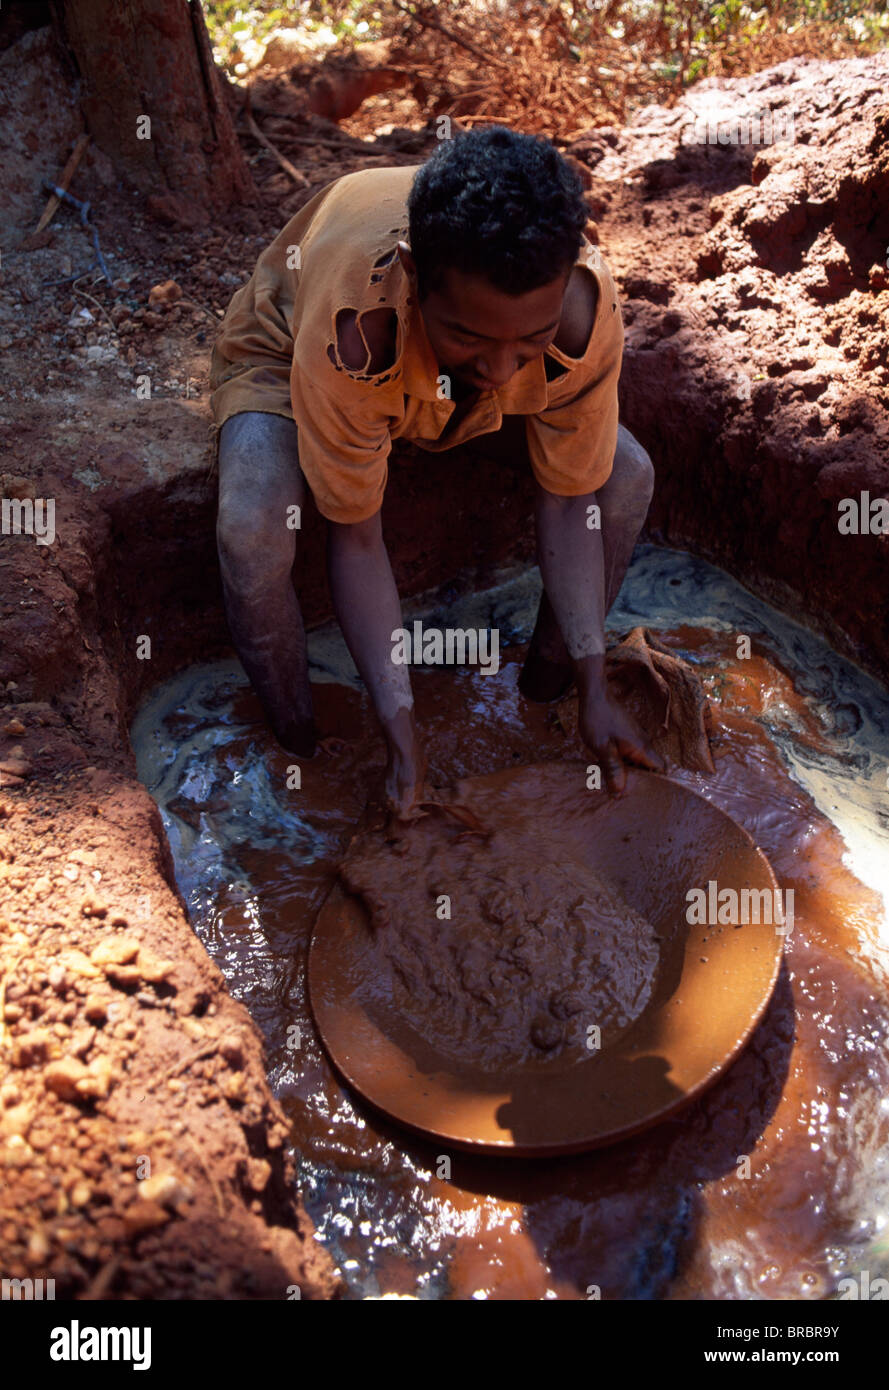 Sur le territoire de l'extraction de l'or couronne dorée de Sifaka, Daraina, dans le nord de Madagascar Banque D'Images